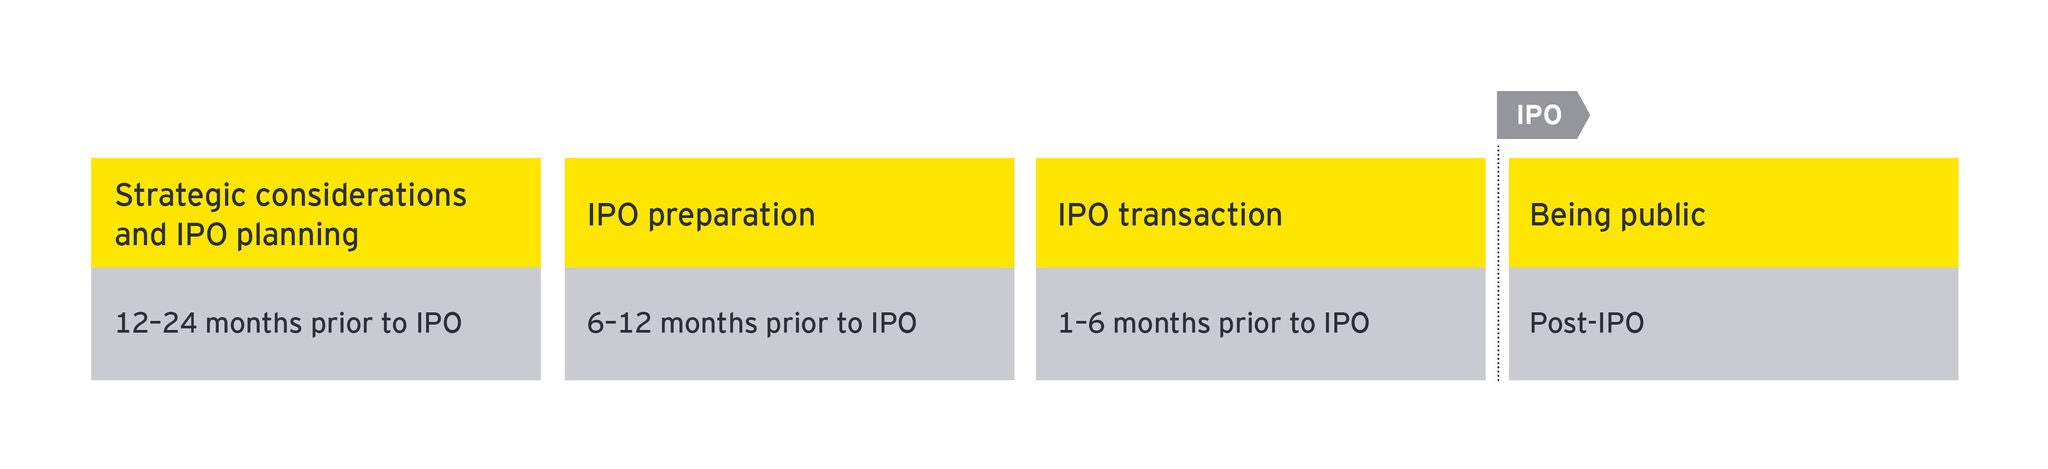 IPO Value Journey